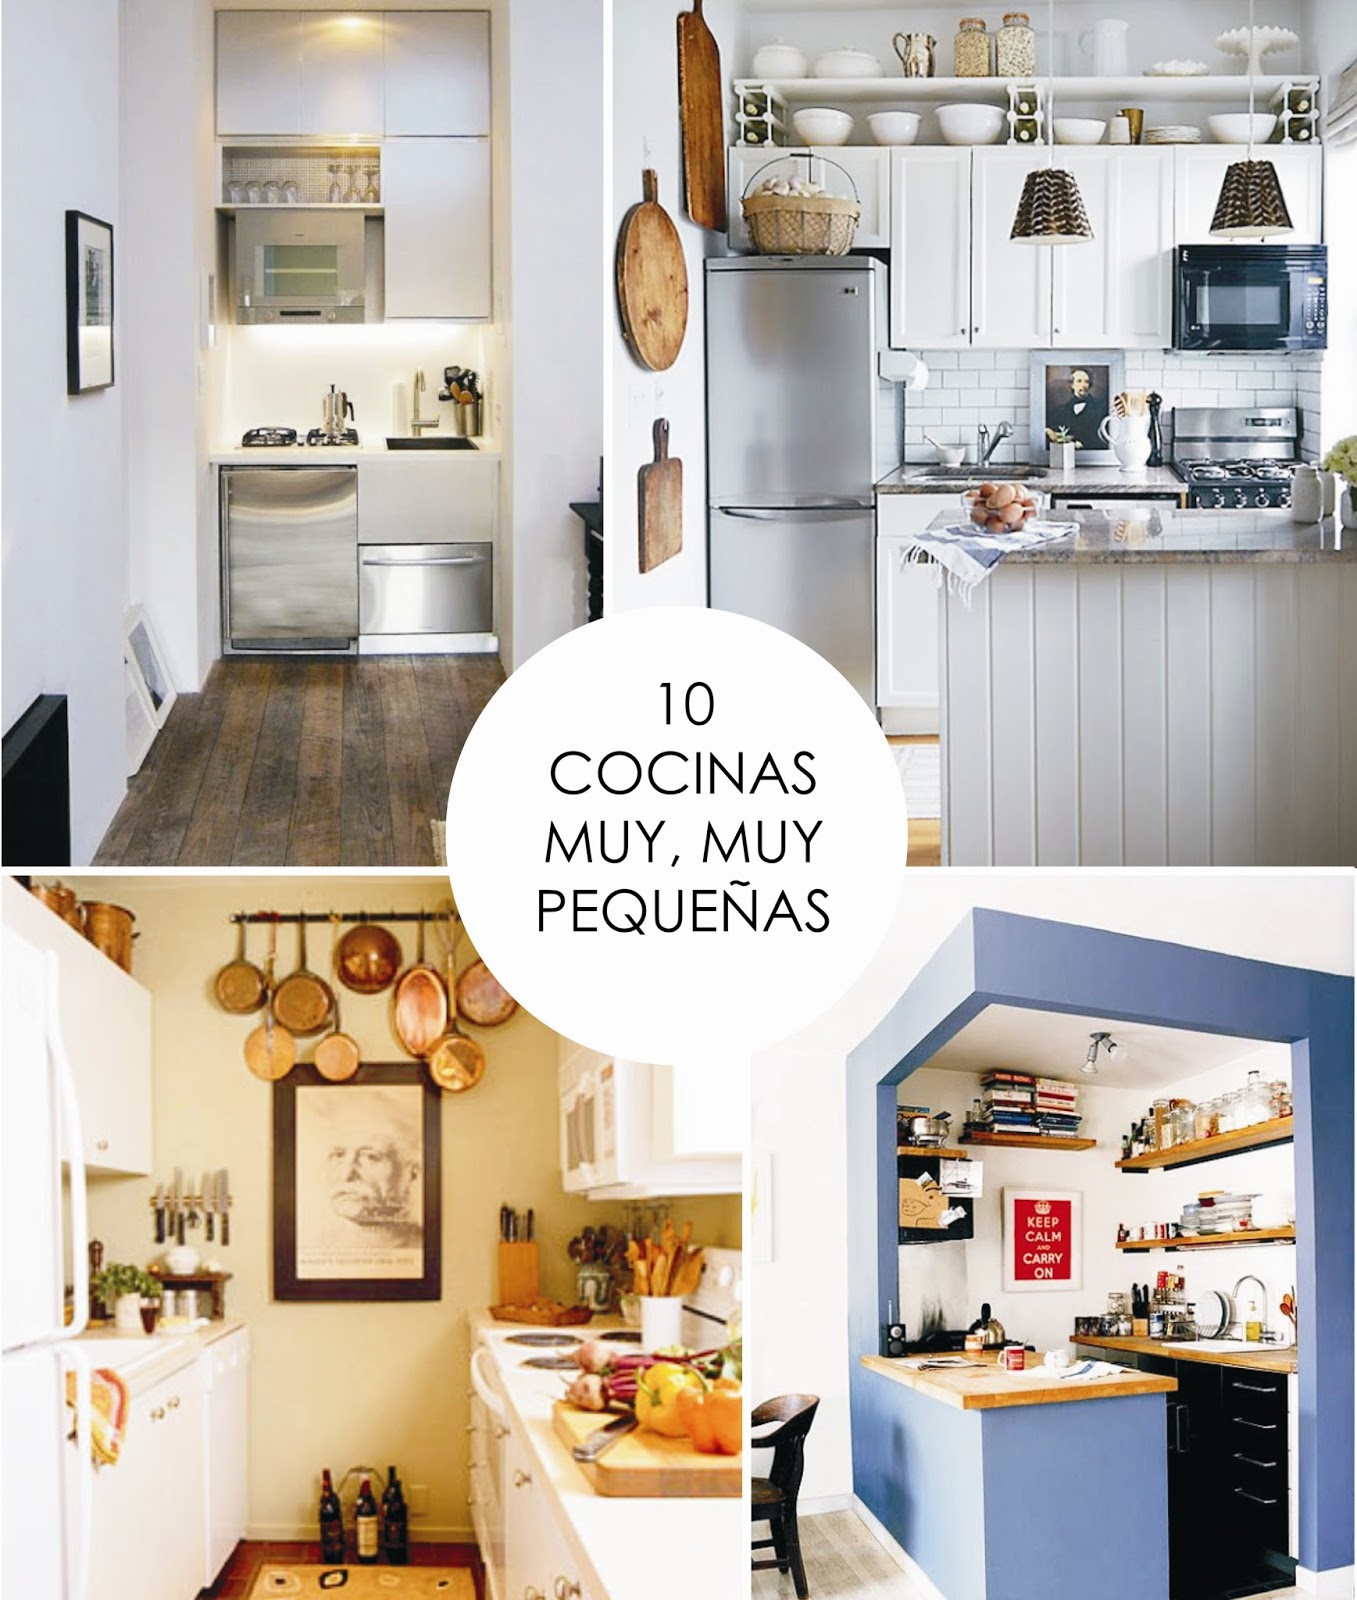 26 HQ Pictures Decoraciones Cocinas Pequeñas : 10 cocinas pequeñas que aprovechan el espacio